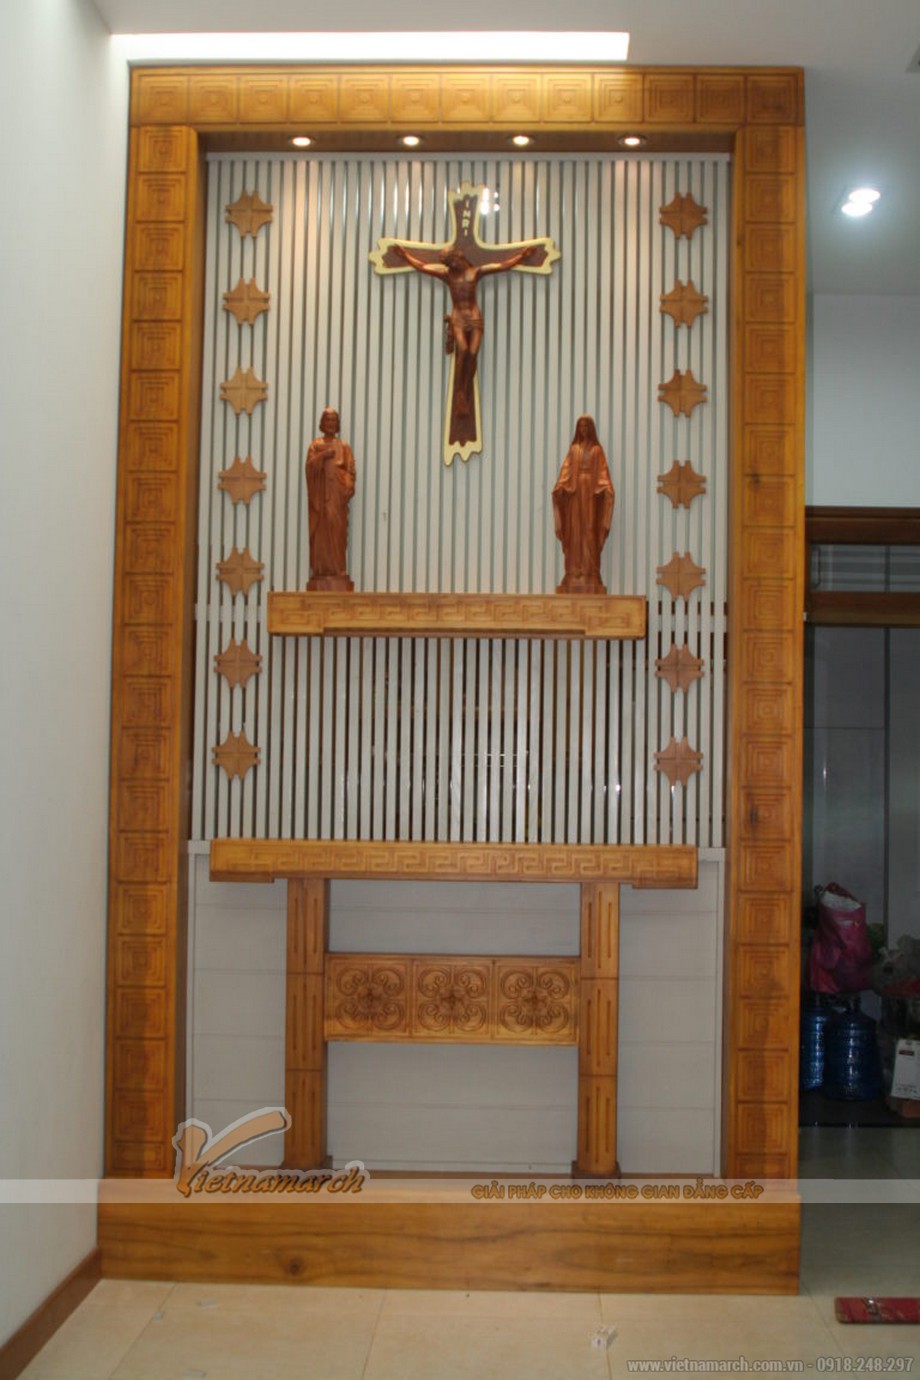 Bộ sưu tập Mẫu bàn thờ Công giáo đơn giản nhưng vô cùng tinh tế > Mẫu bàn thờ chúa có khung viền